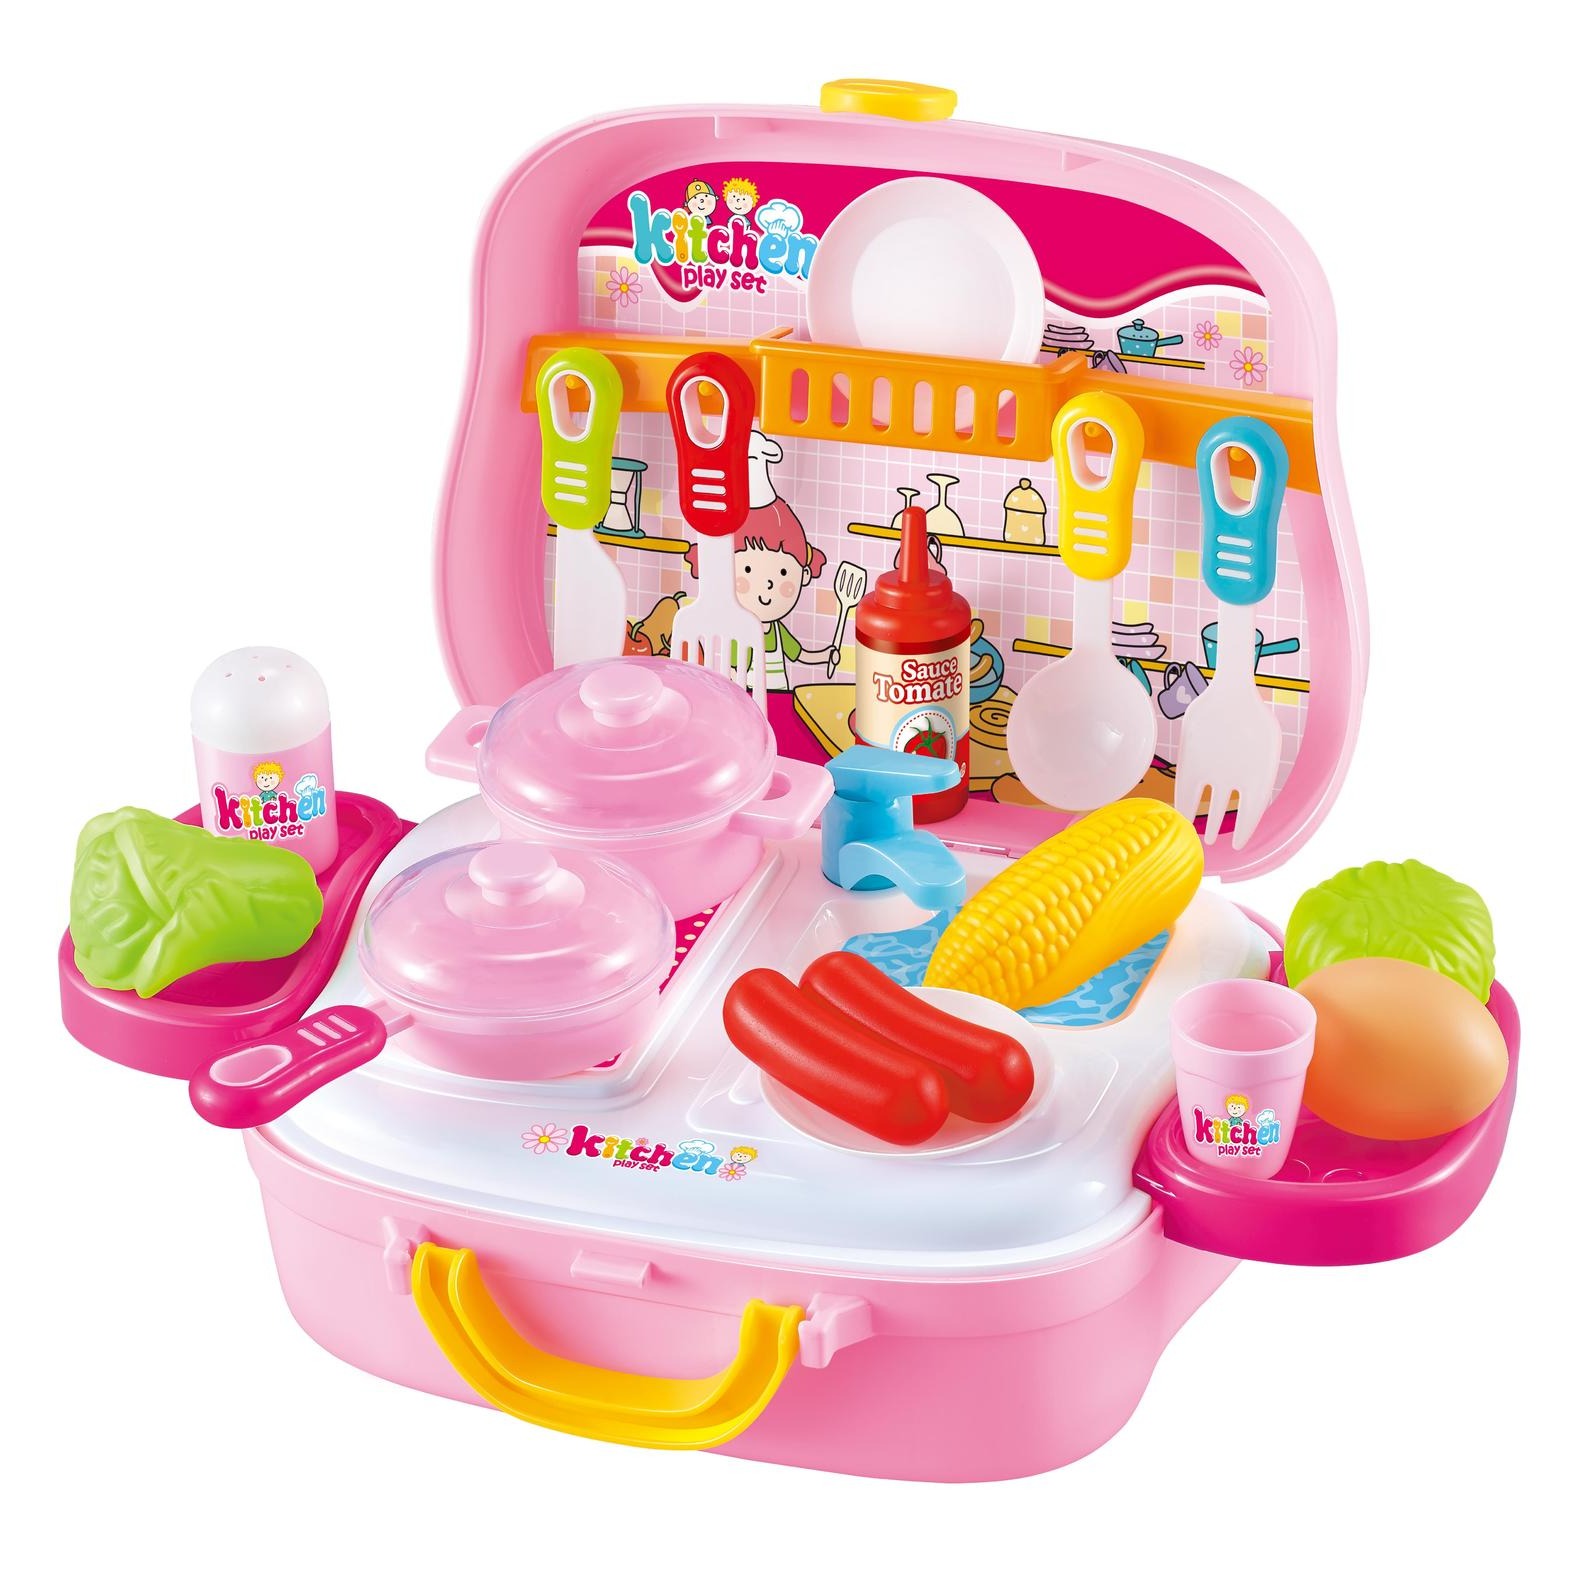 过家家玩具厨房玩具手提旅行箱做饭玩具煮饭厨具宝宝儿童女孩餐具套装